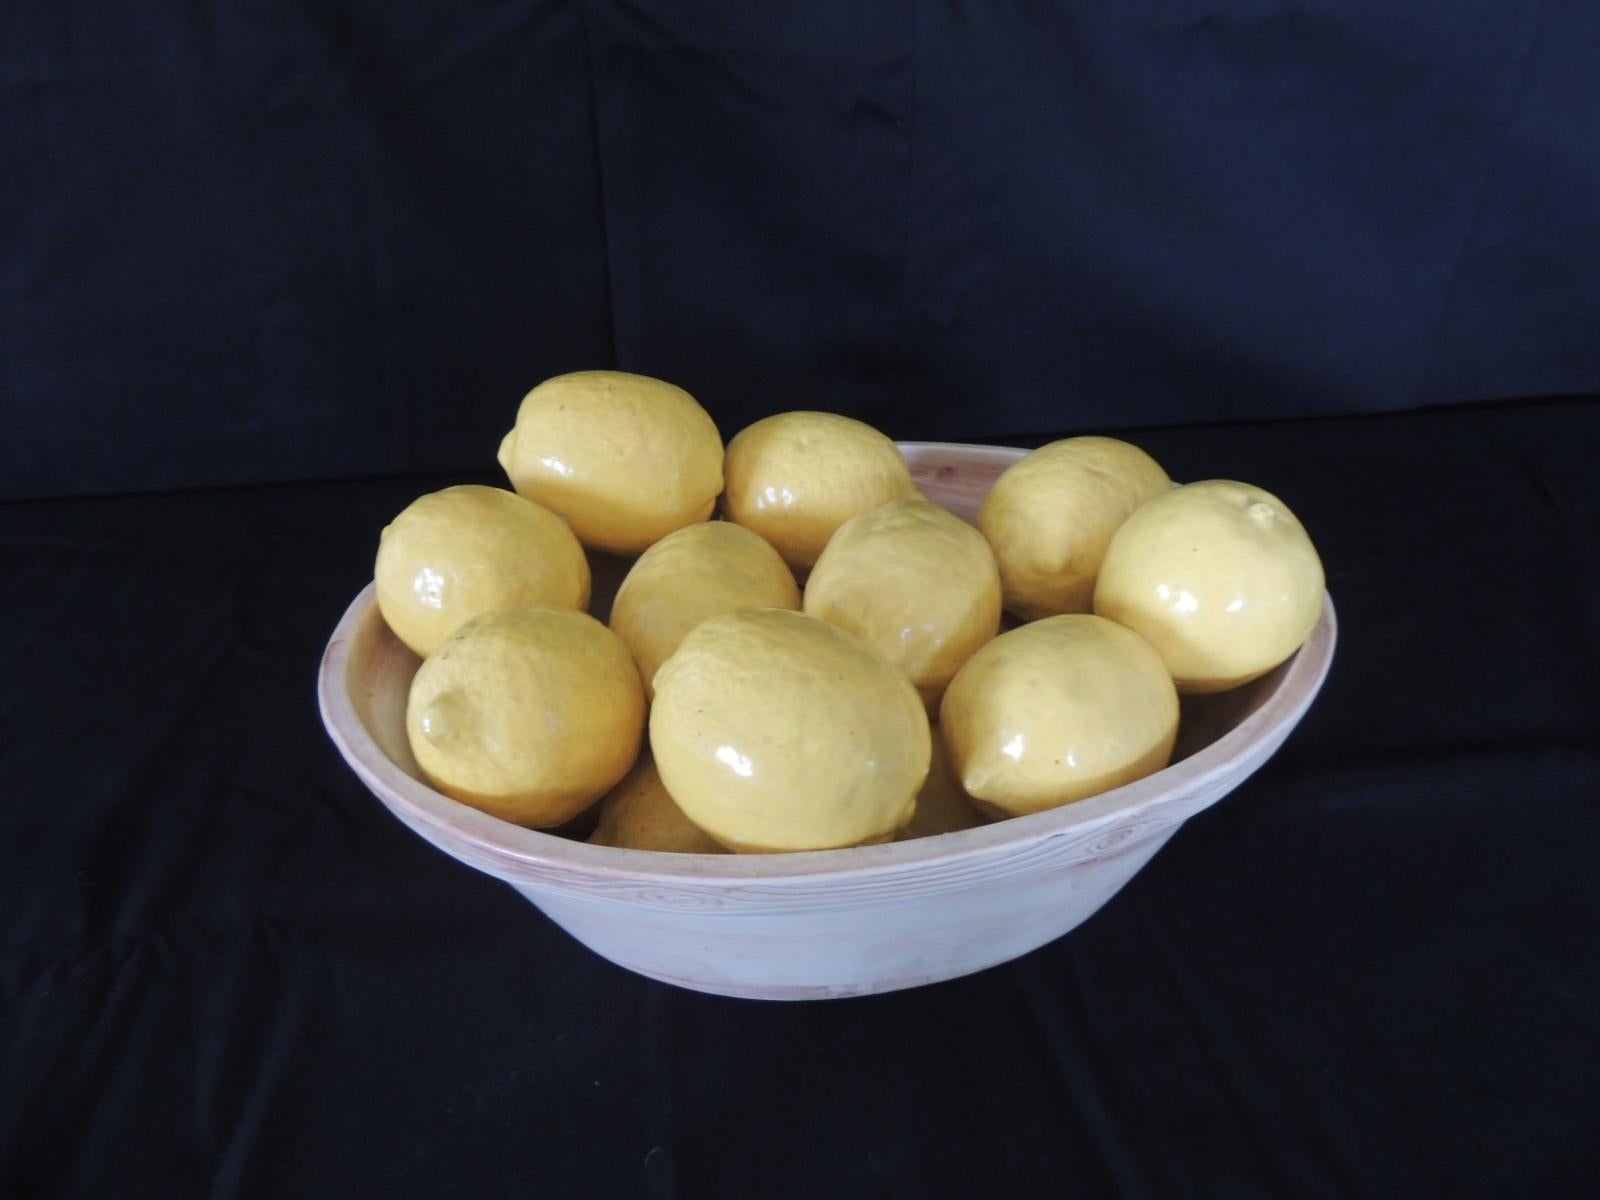 Trompe-L'oeil Lemons inside Faux Wooden porcelain Basket.
Italian yellow lemons inside basket (real lemon size)
Stamped: Italy
Size: 11